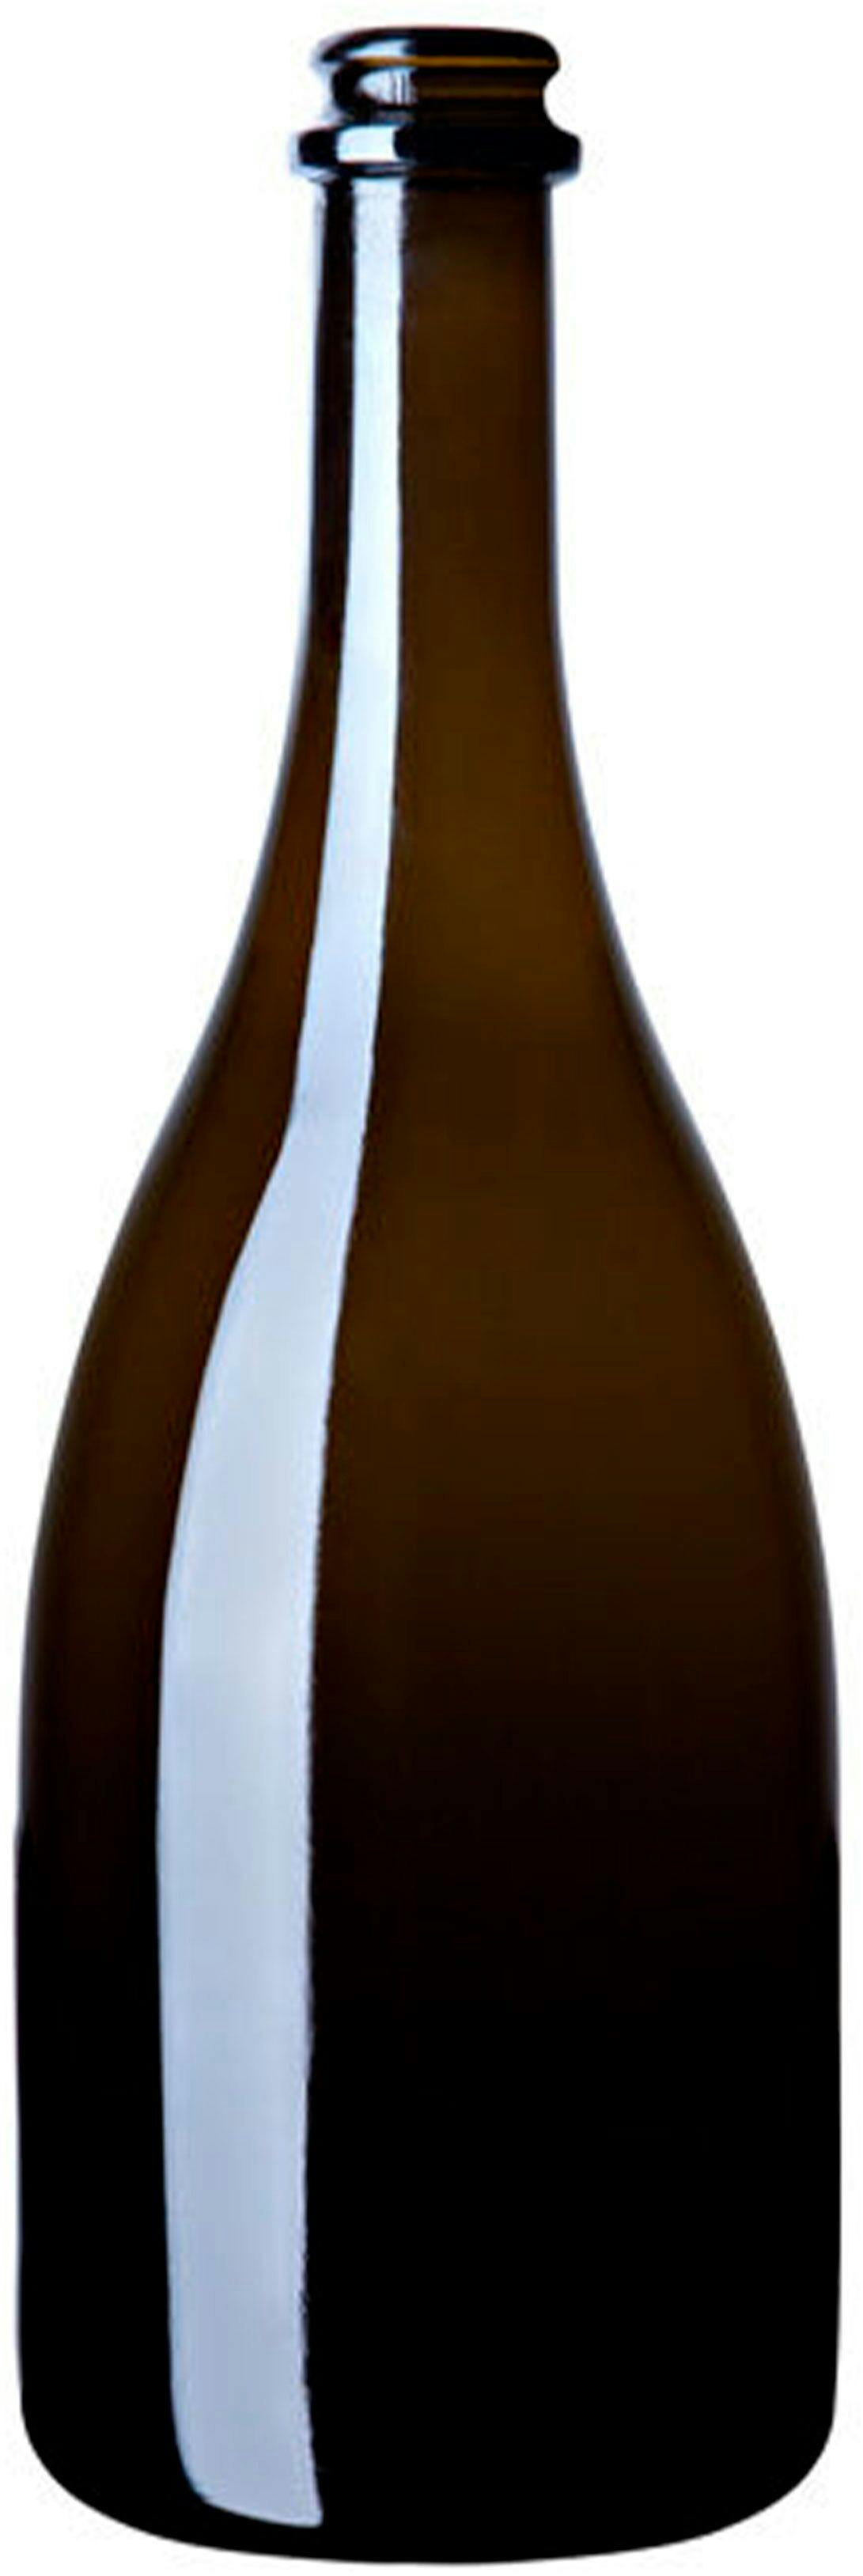 Bottle SPUM  OTELLO 750 ml BG-Crown